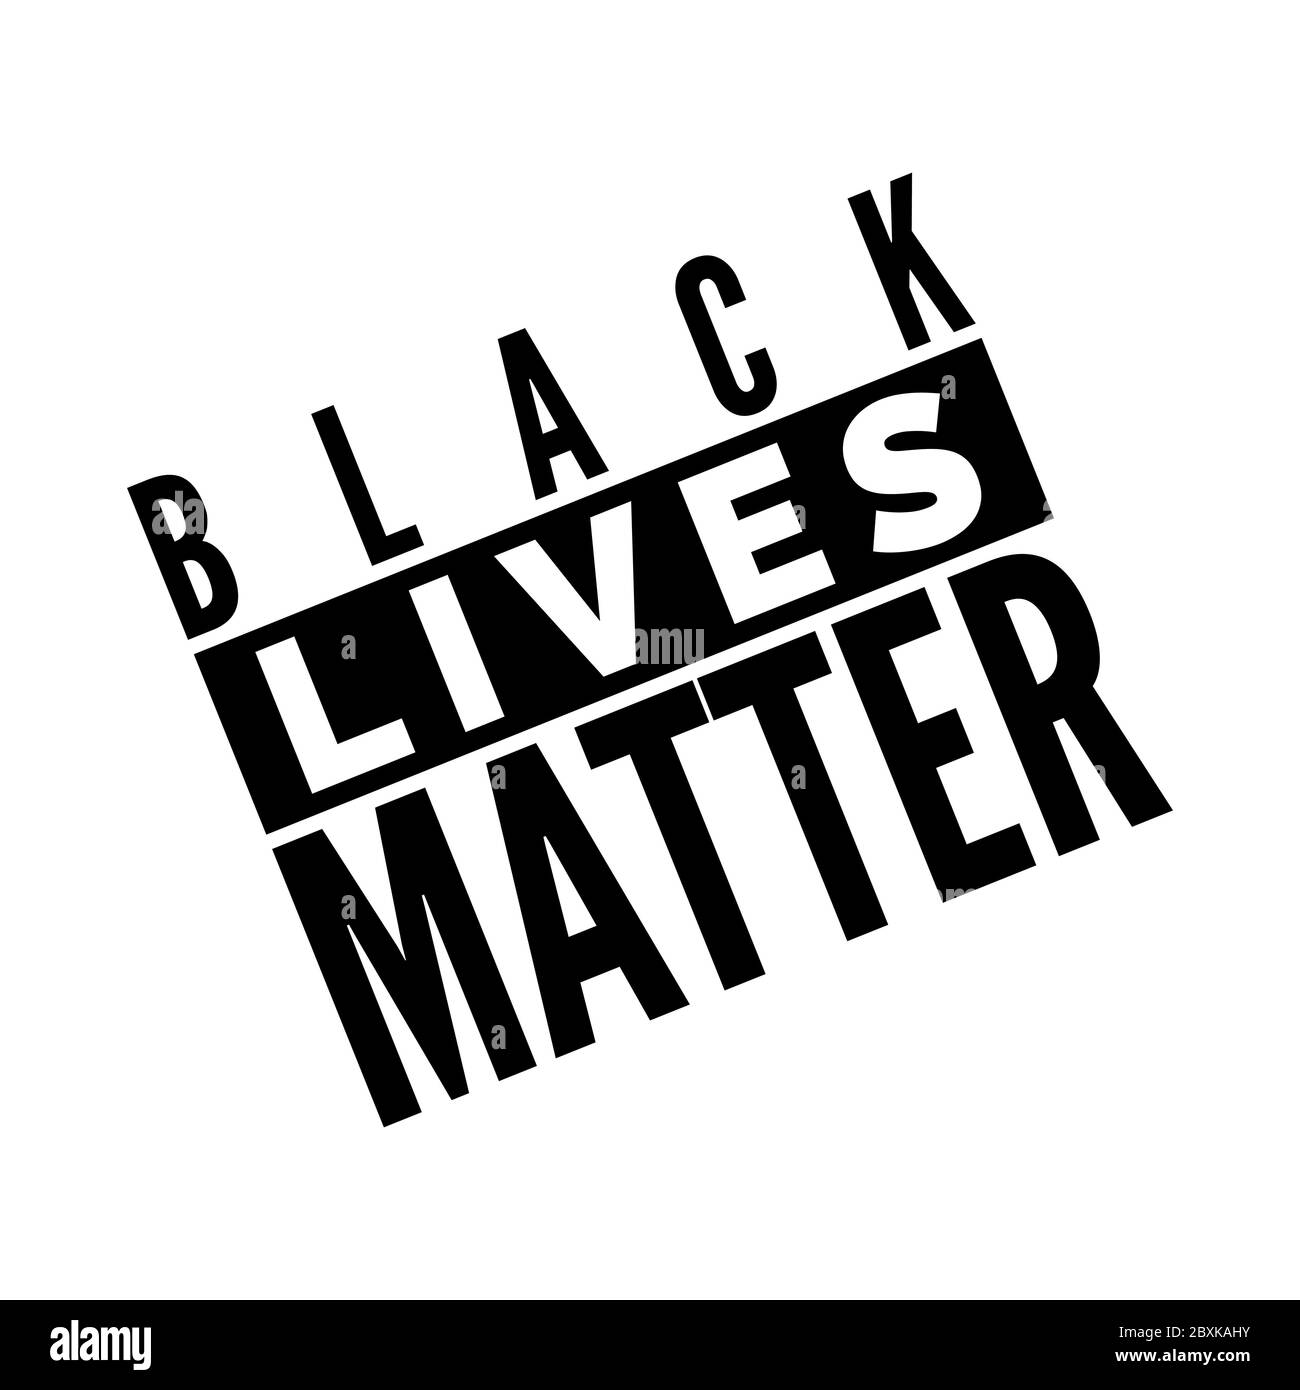 Black Lives Matter Text Poster. Problema sociale dell'umanità. Vettore Illustrazione Vettoriale